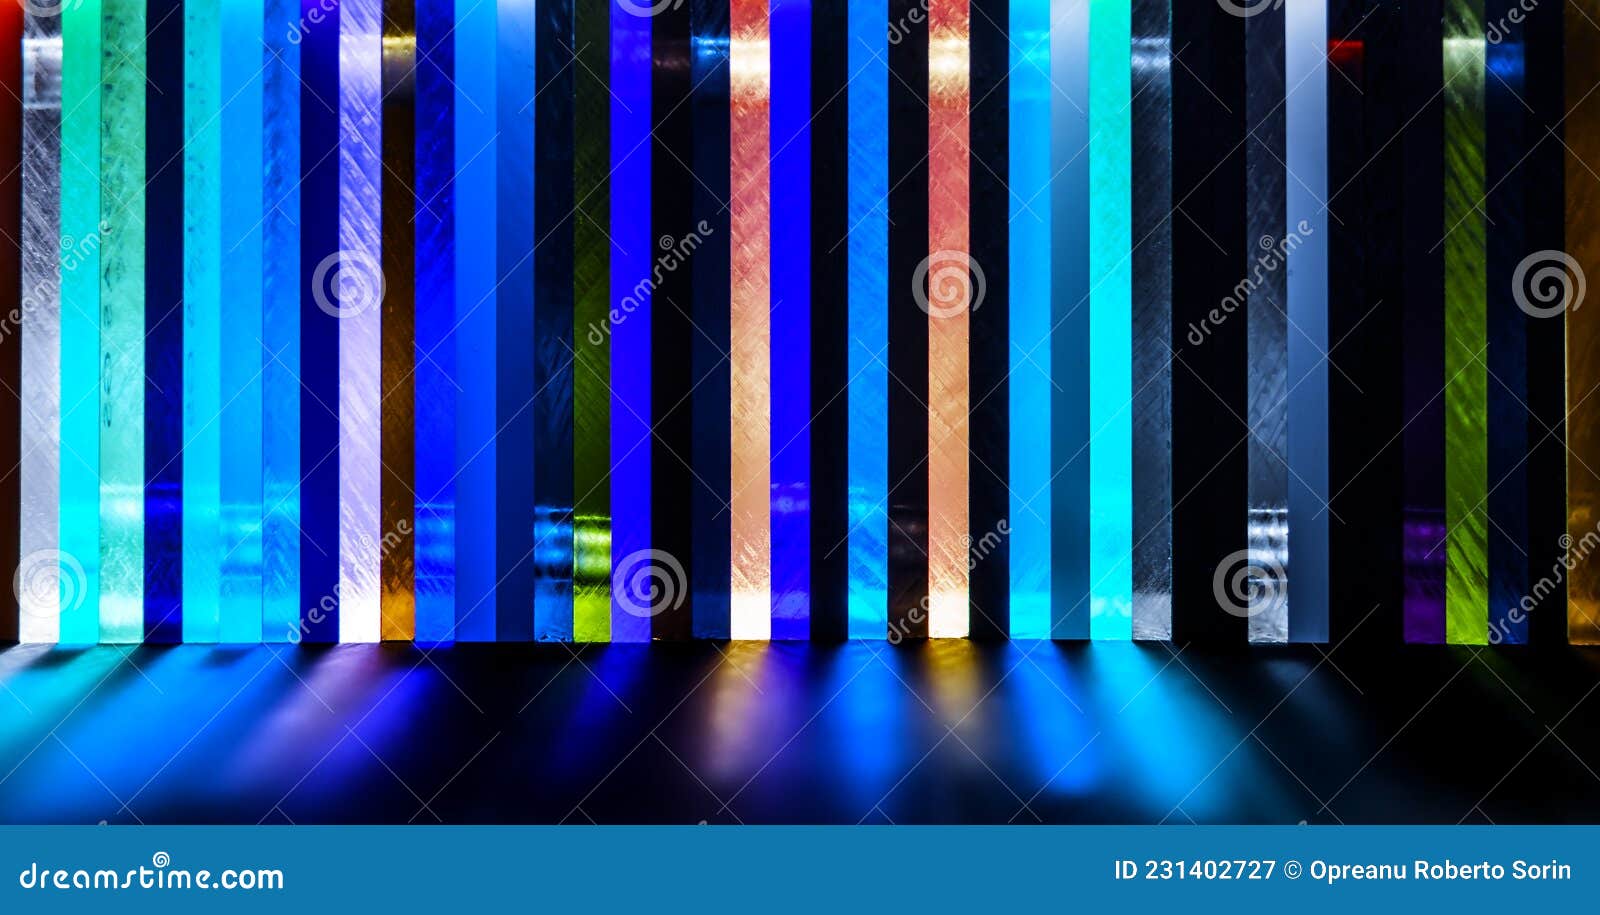 Lumière à Travers La Pile De Différentes Couleurs Coulé Feuille Acrylique  Photo stock - Image du matériau, affichage: 231402730